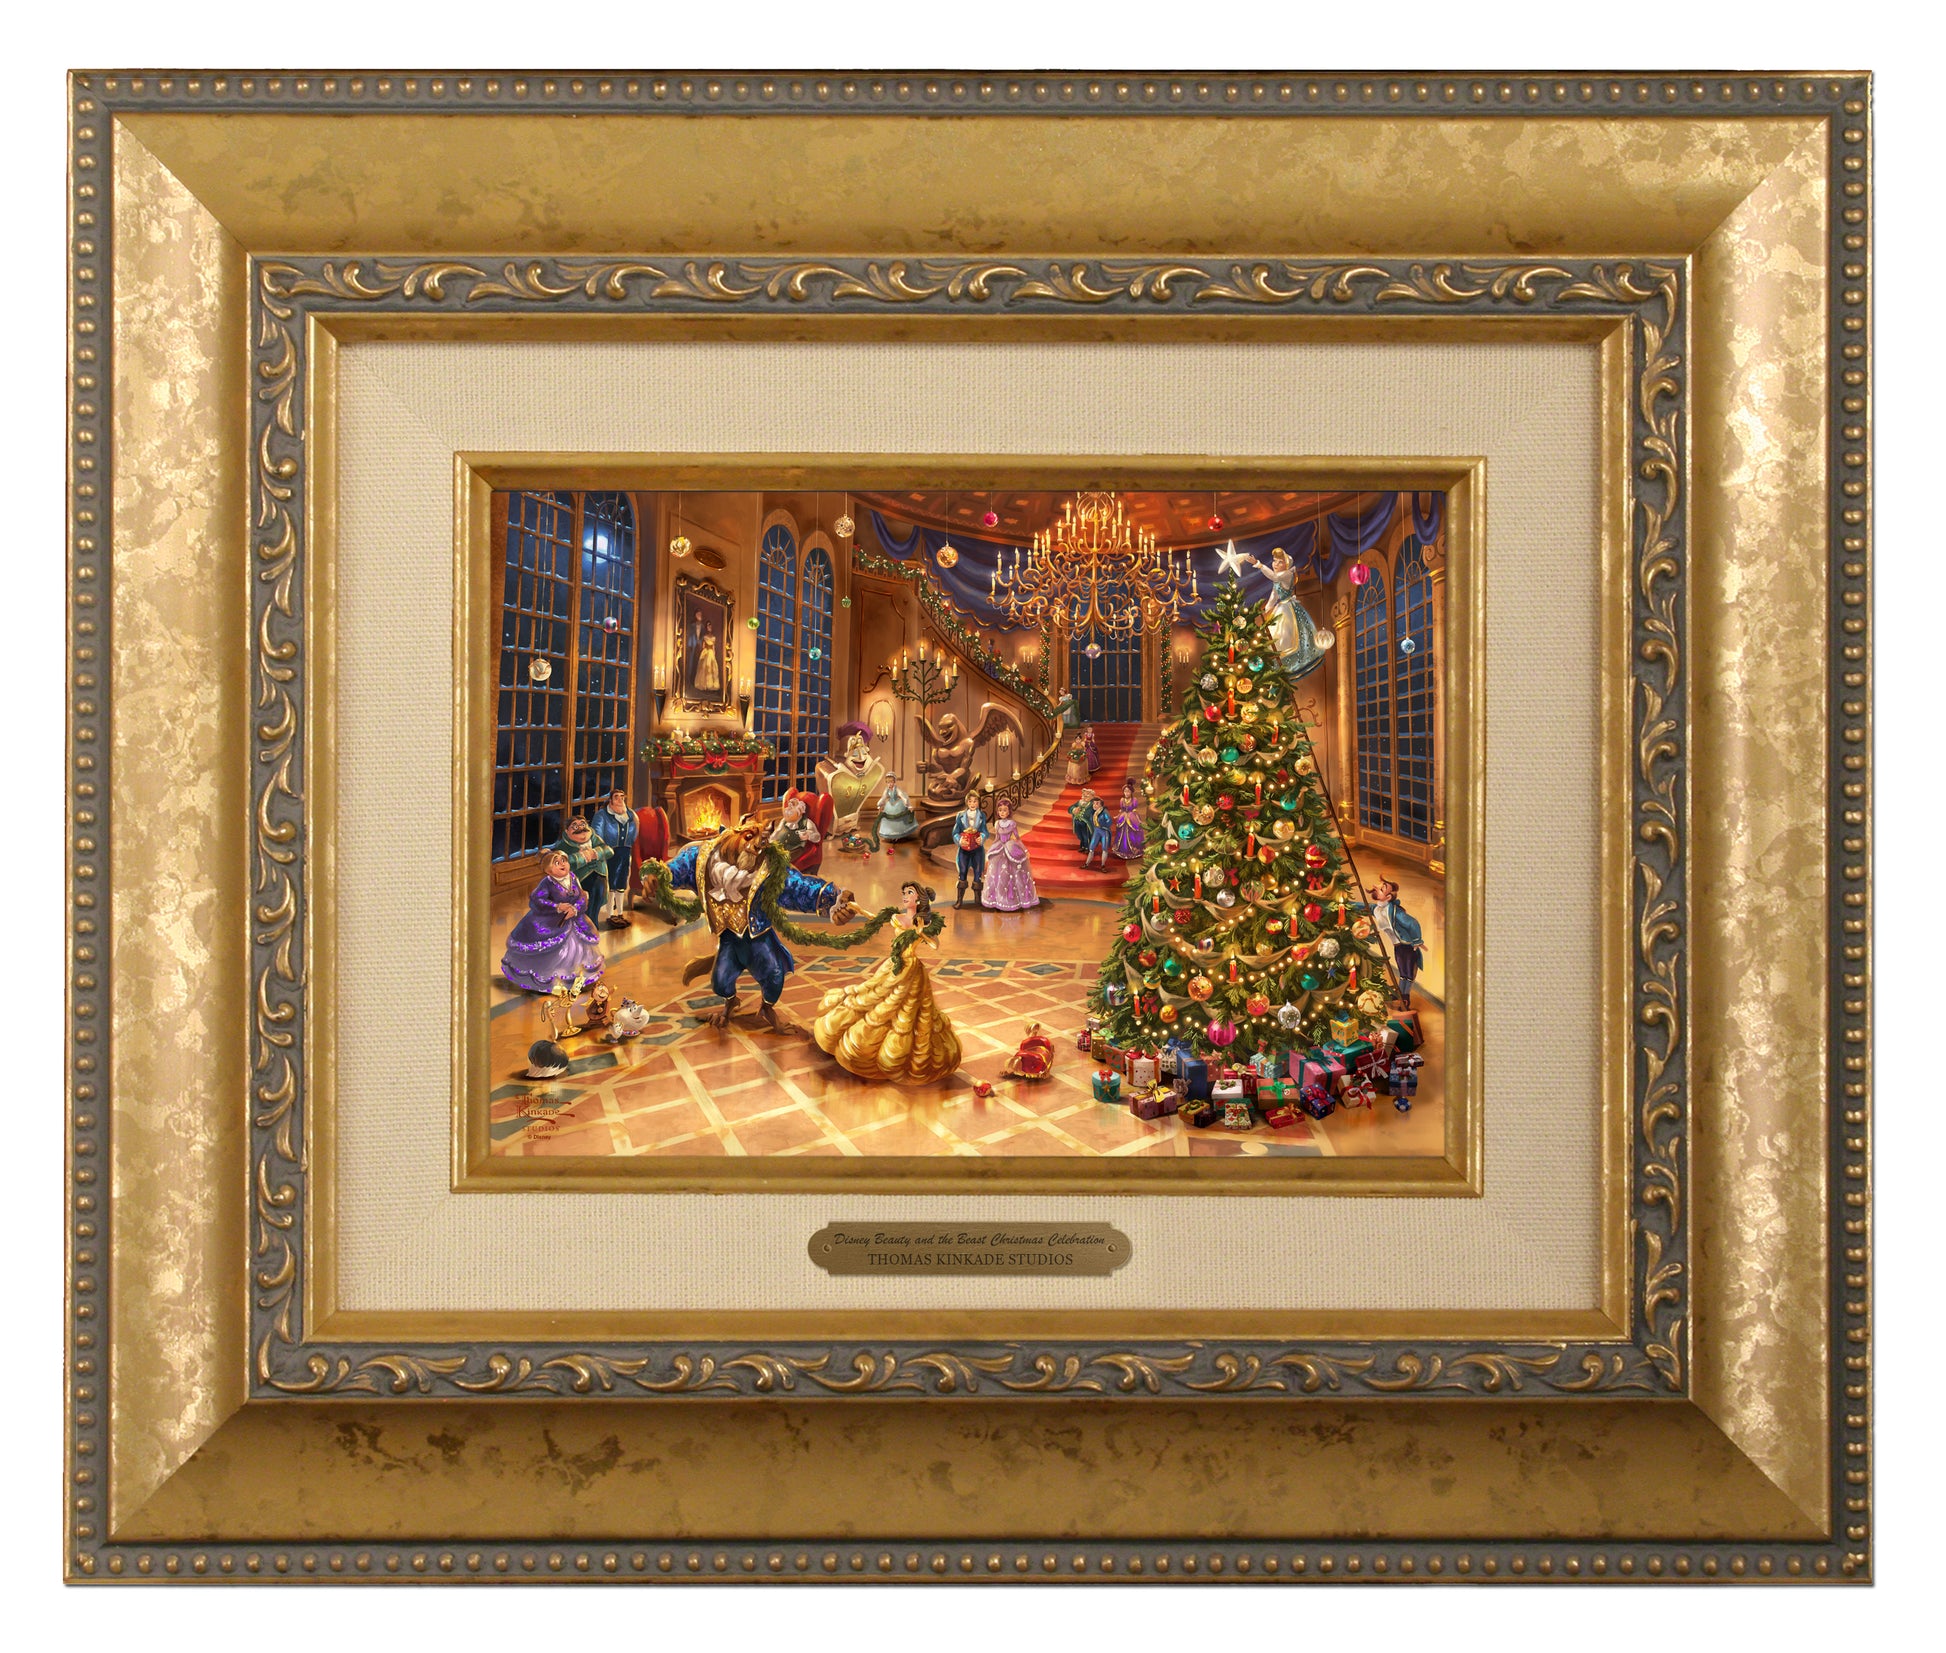 158463_Disney Beauty and the Beast Christmas Celebration_5x7_BRUSHSTROKE_Framed_Gold.jpg